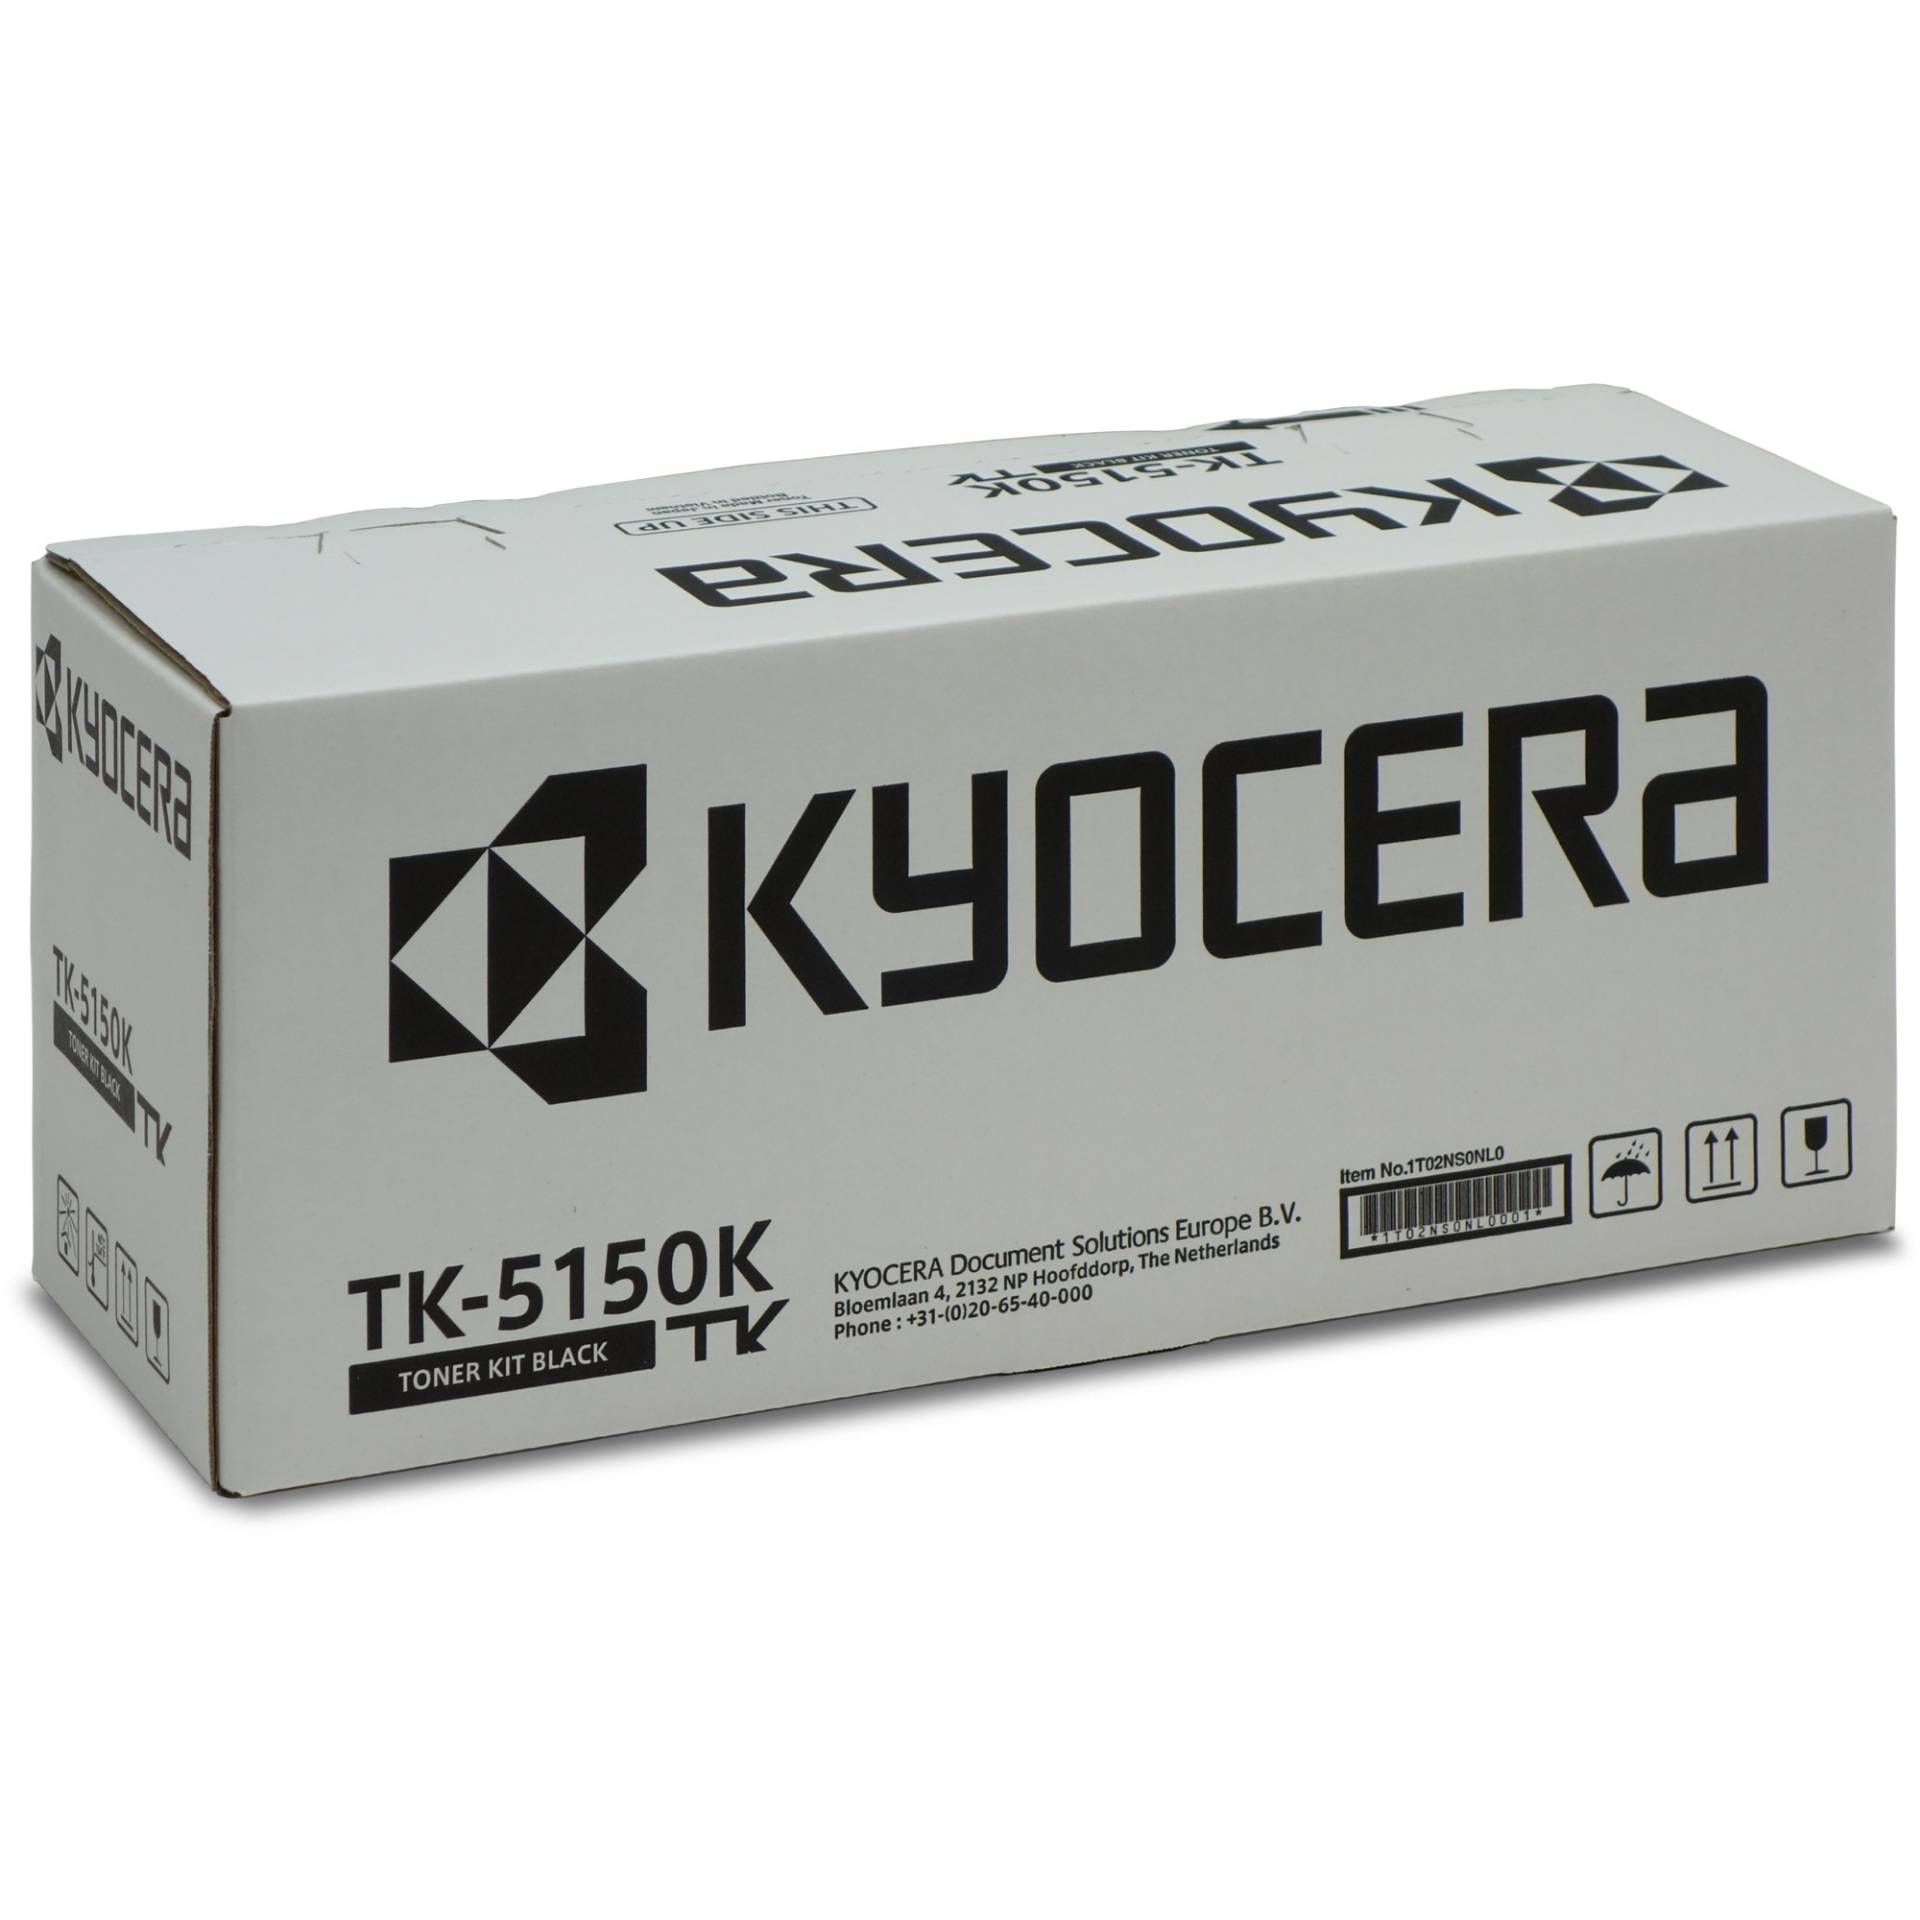 Toner schwarz TK-5150K von Kyocera